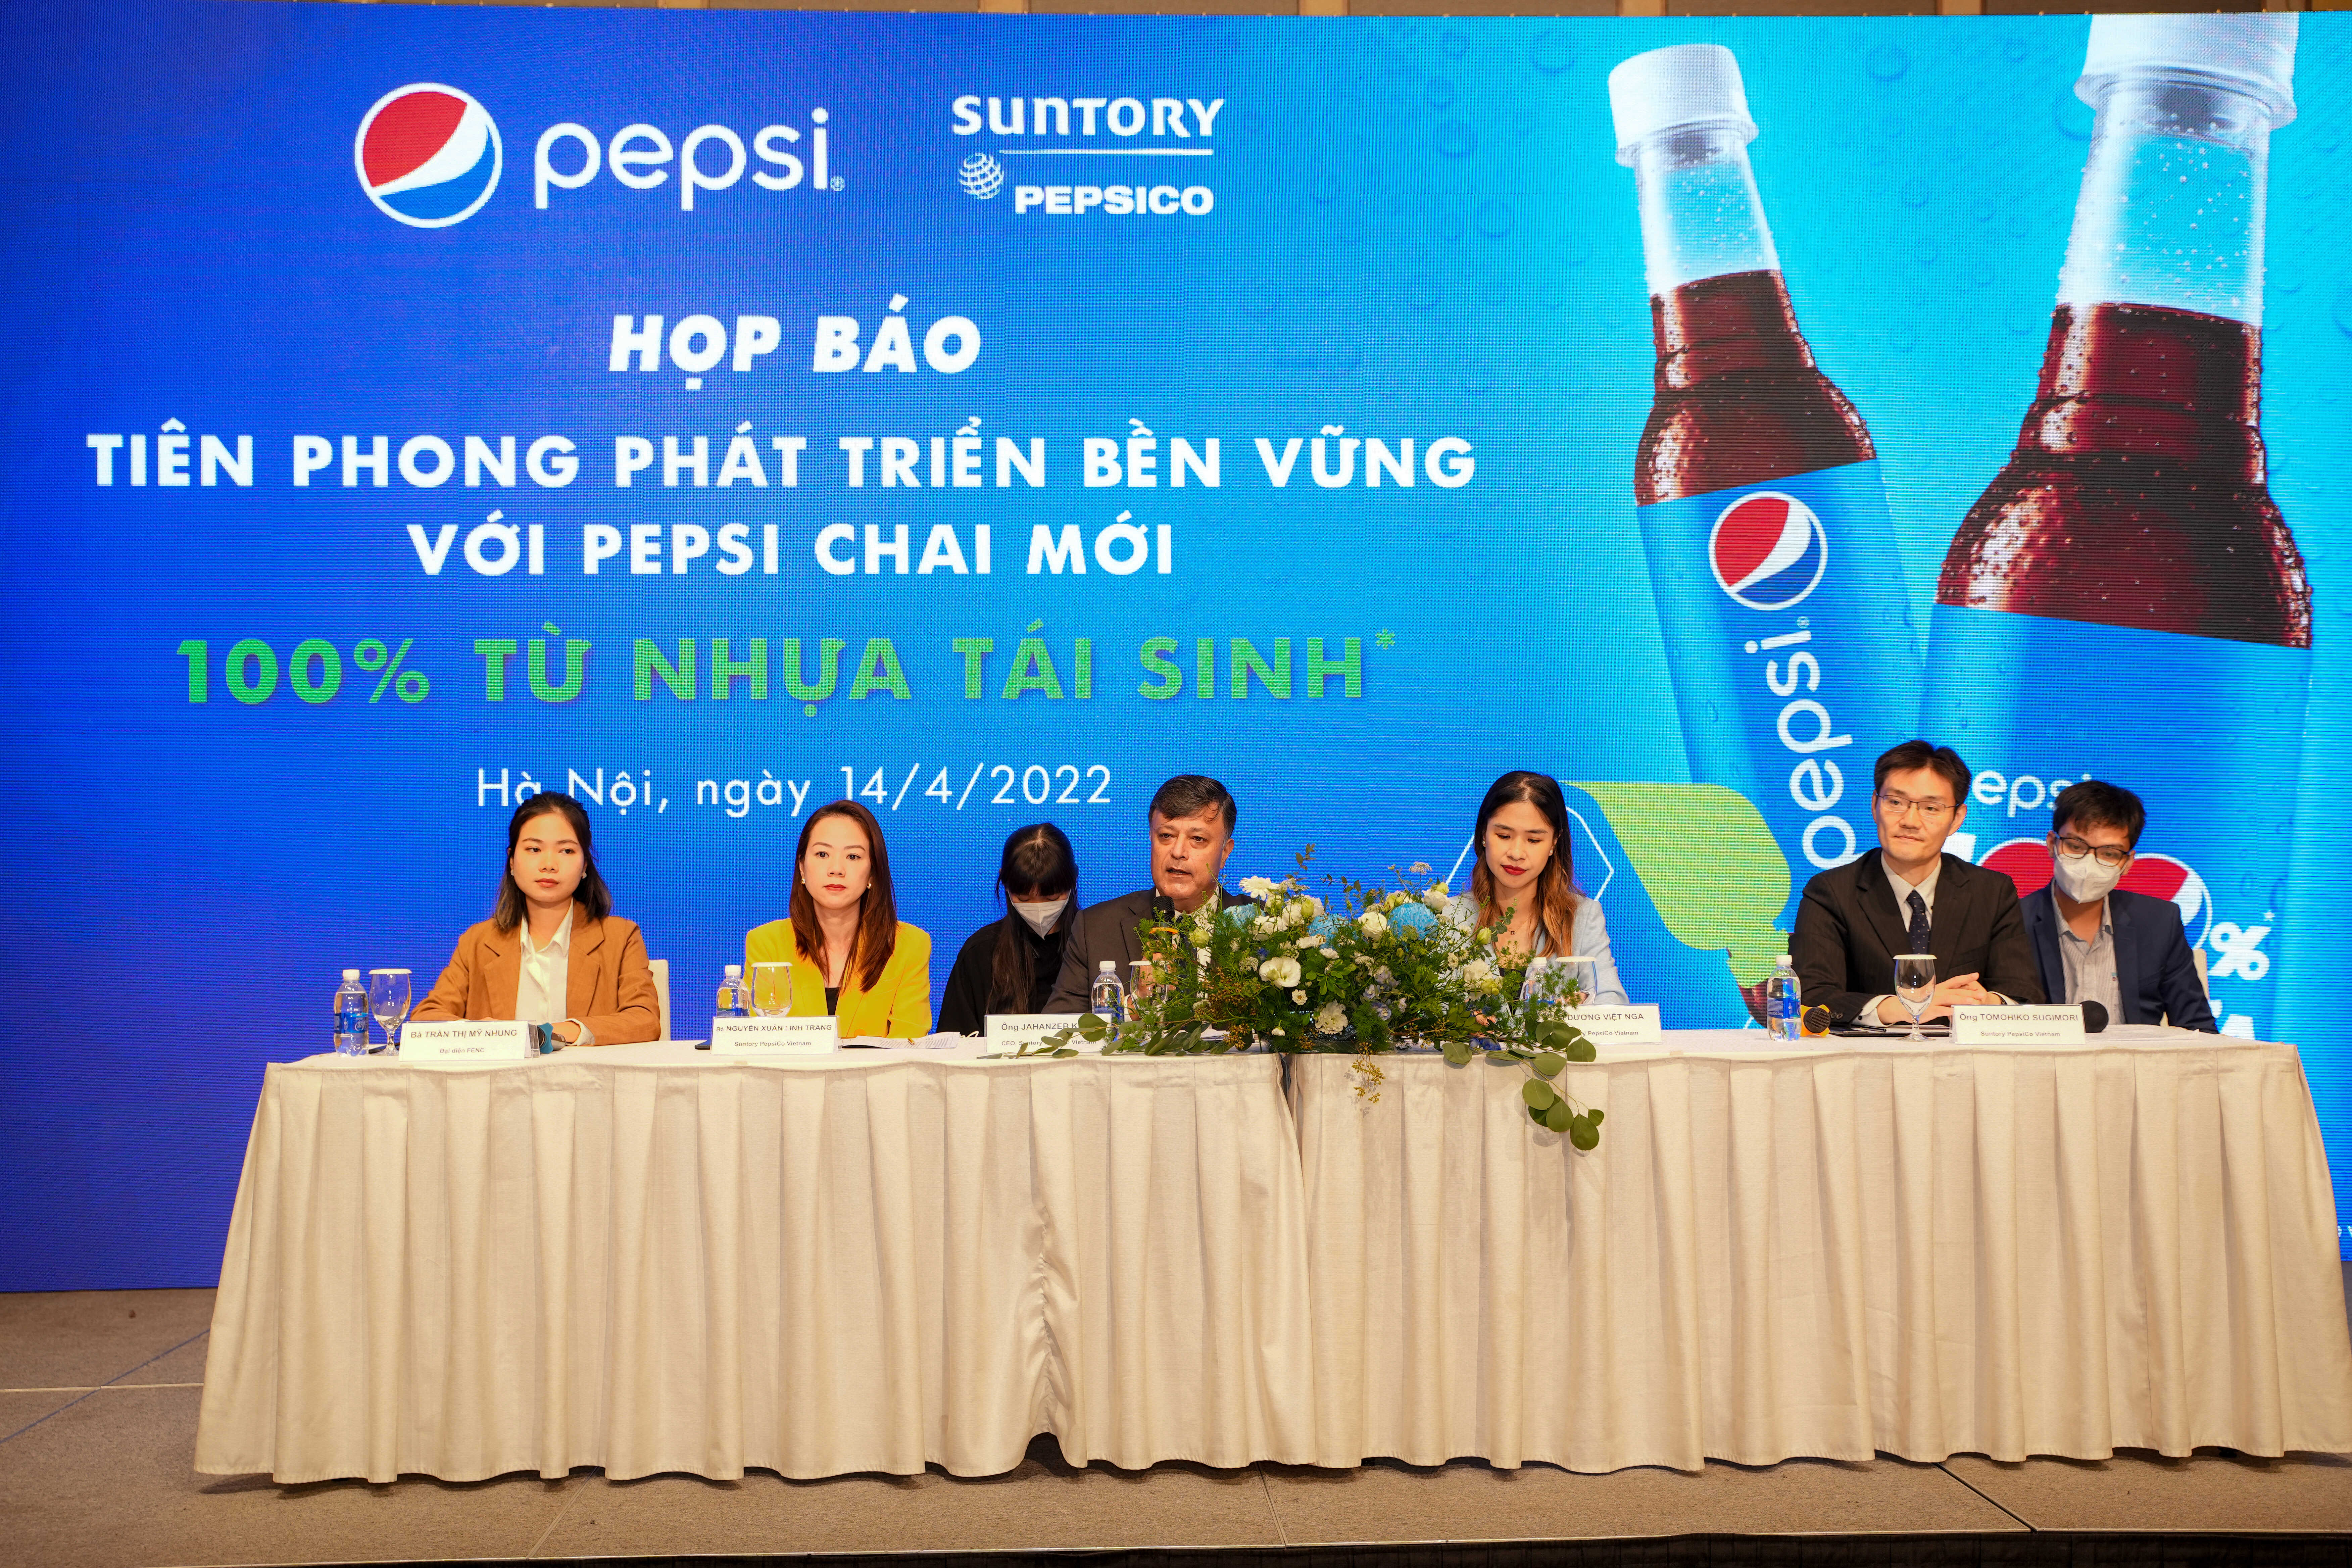 Suntory PepsiCo lần đầu tiên ra mắt sản phẩm Pepsi với bao bì được sản xuất 100% từ nhựa tái sinh* tại thị trường Việt Nam 